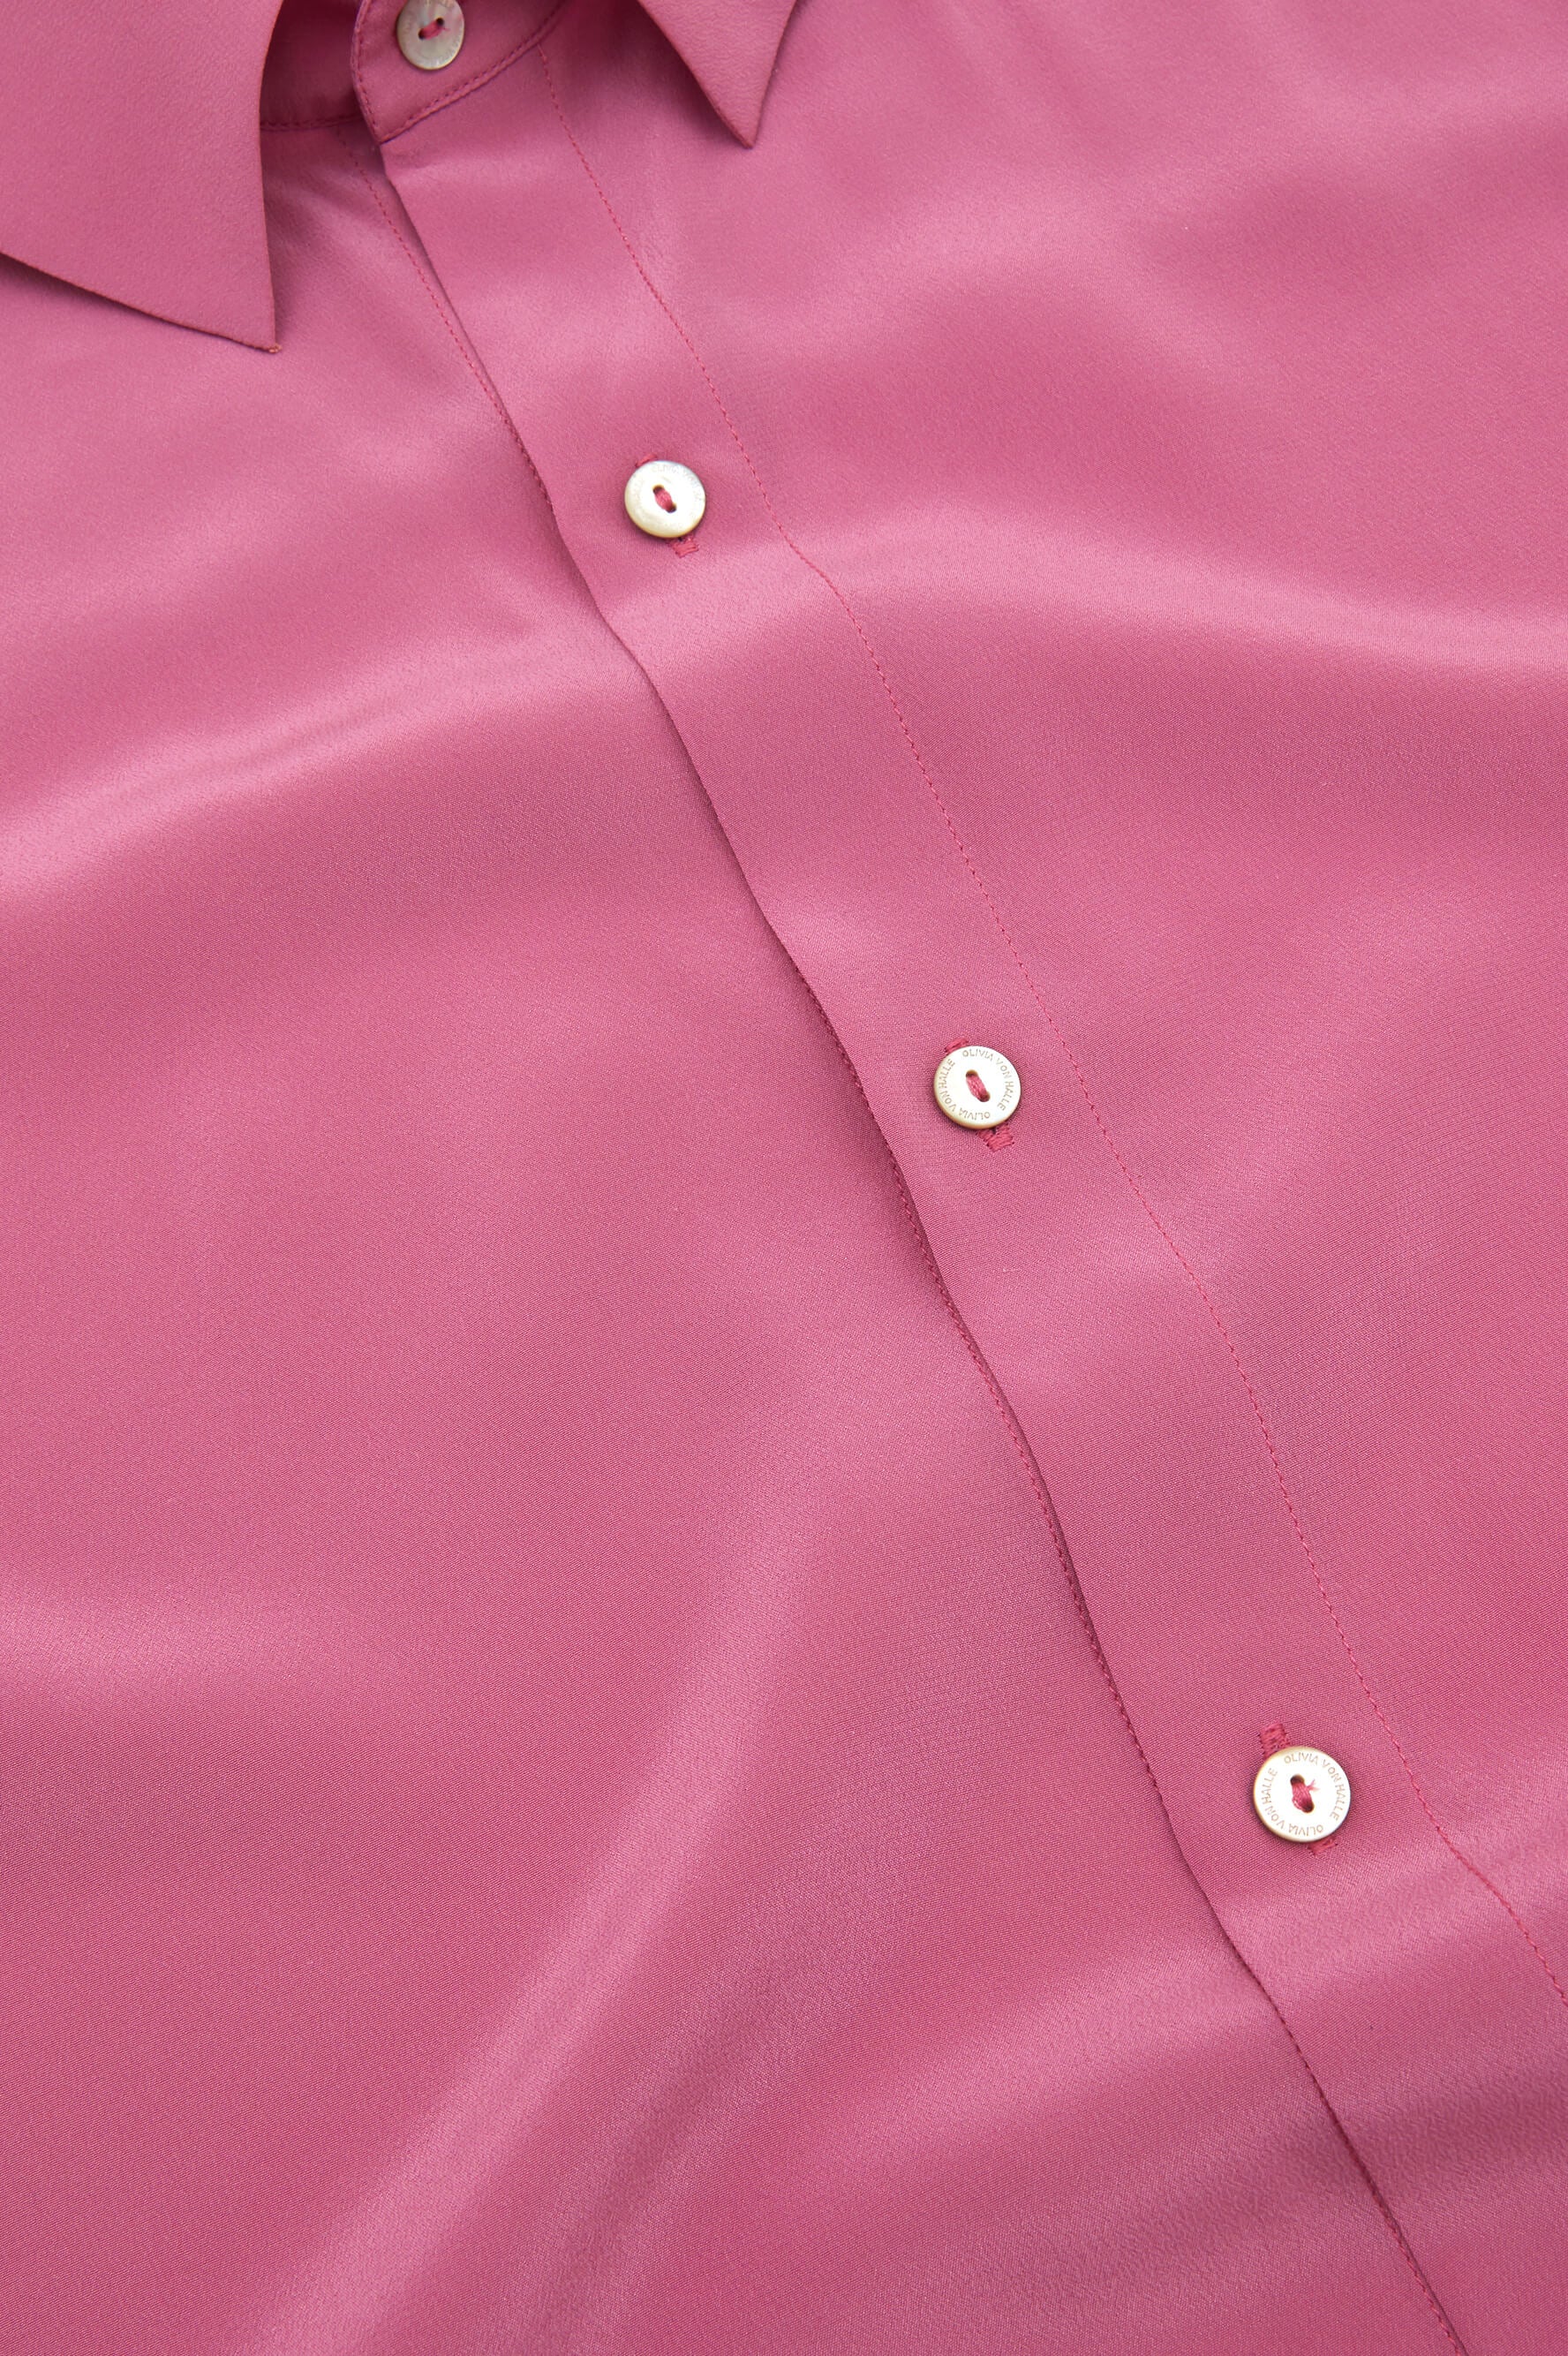 Alabama Pink Silk Crêpe de Chine Pyjamas